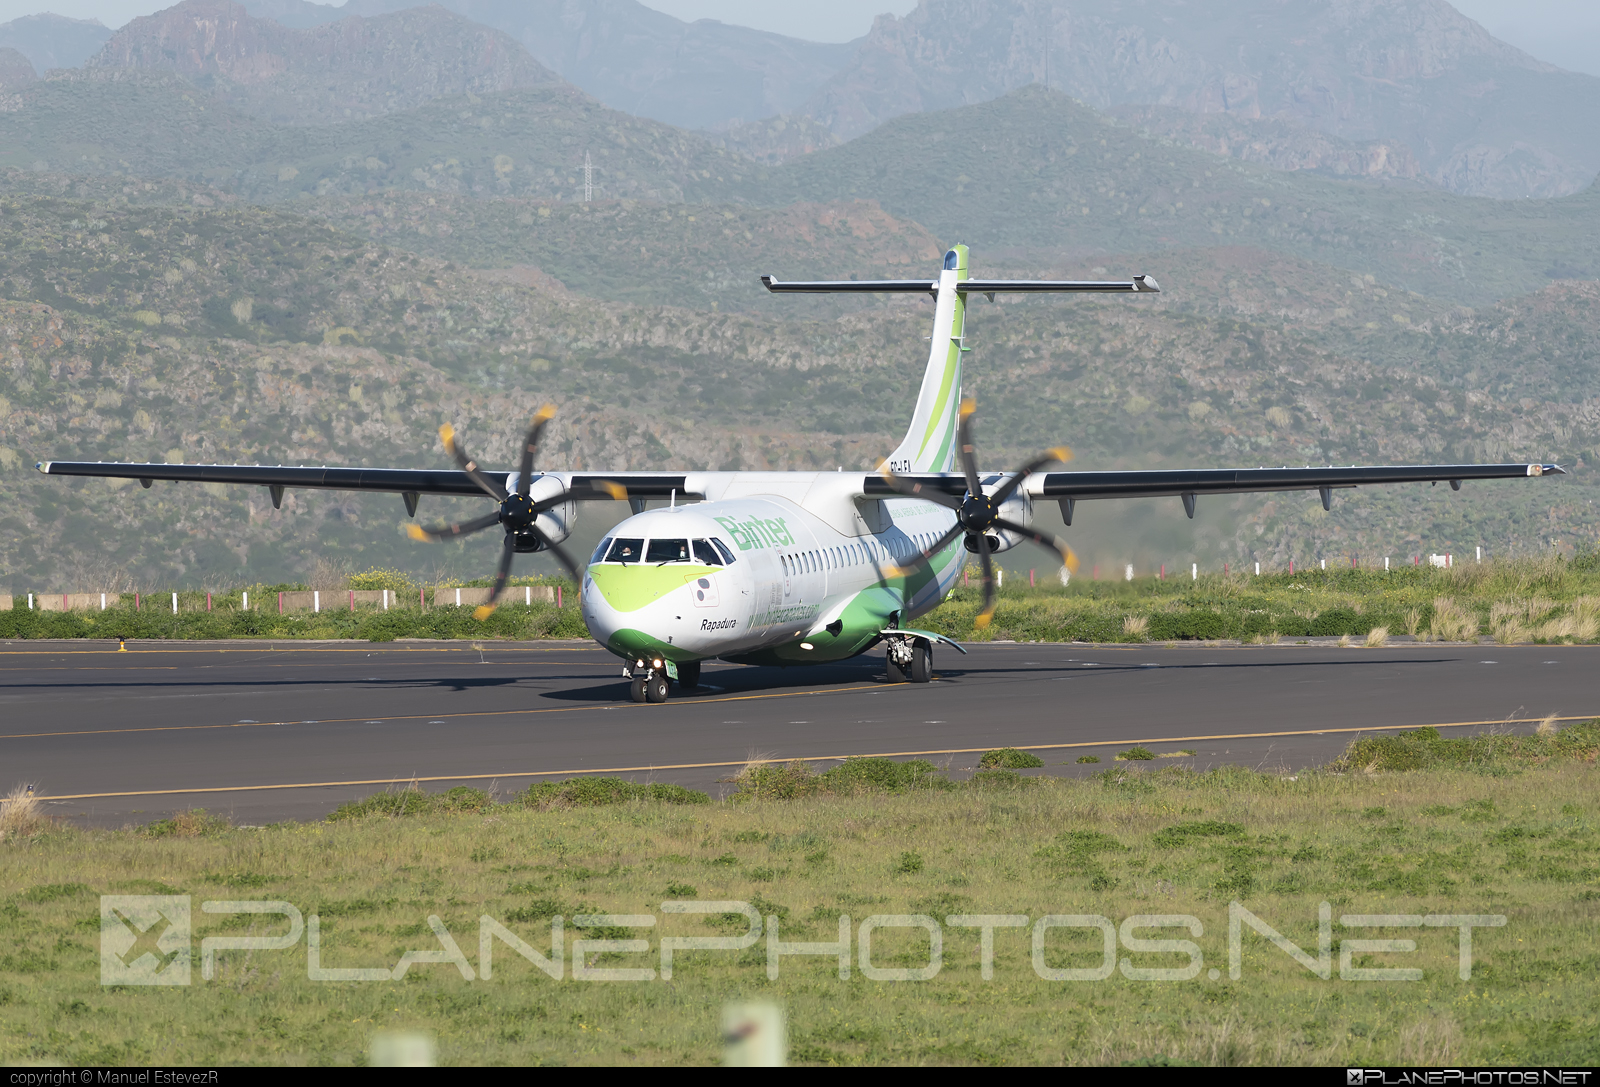 ATR 72-212A - EC-LFA operated by Binter Canarias #BinterCanarias #atr #atr72 #atr72212a #atr72500